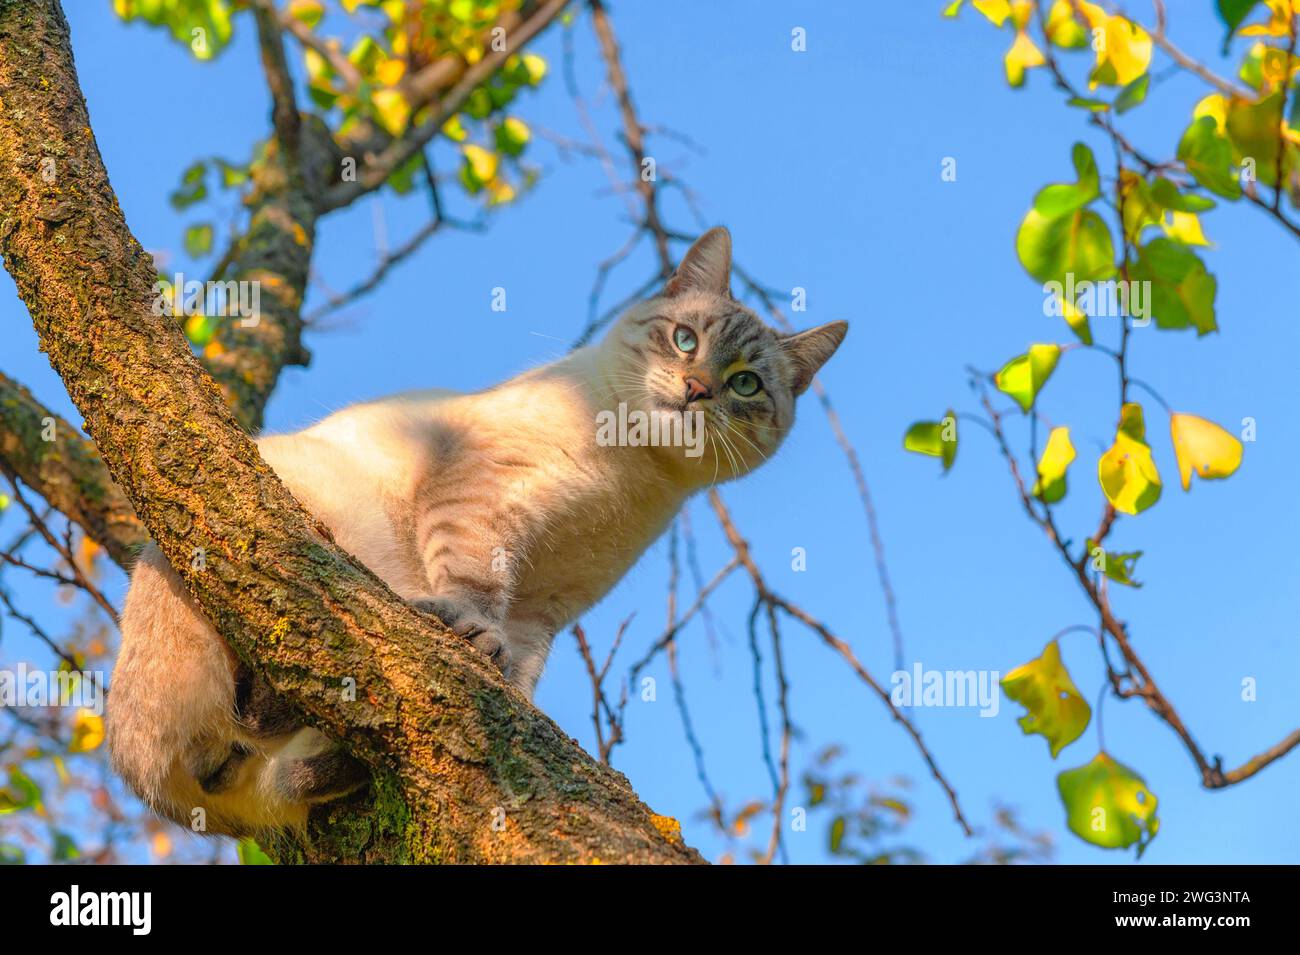 Un jeune chat crème avec des yeux verts et des rayures grises sur son visage est assis sur un arbre contre un ciel bleu Banque D'Images